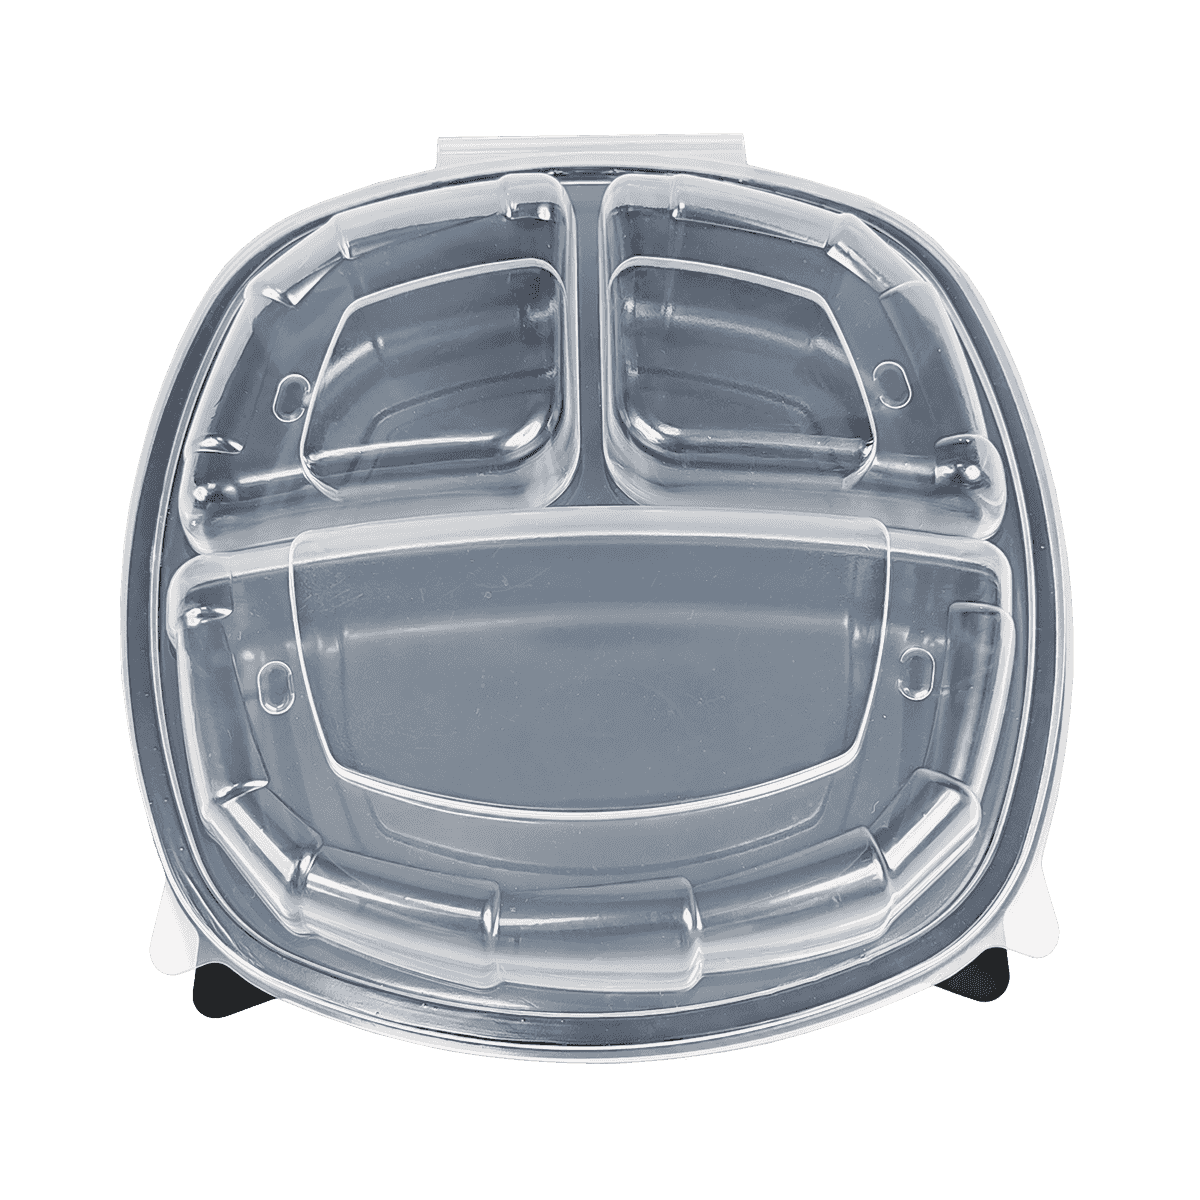 ZK-PP-036 Contenedores de embalaje de PP aptos para congelador y microondas, reutilizables para almacenamiento en la cocina, preparación de comidas, comida para llevar, suministros para restaurantes